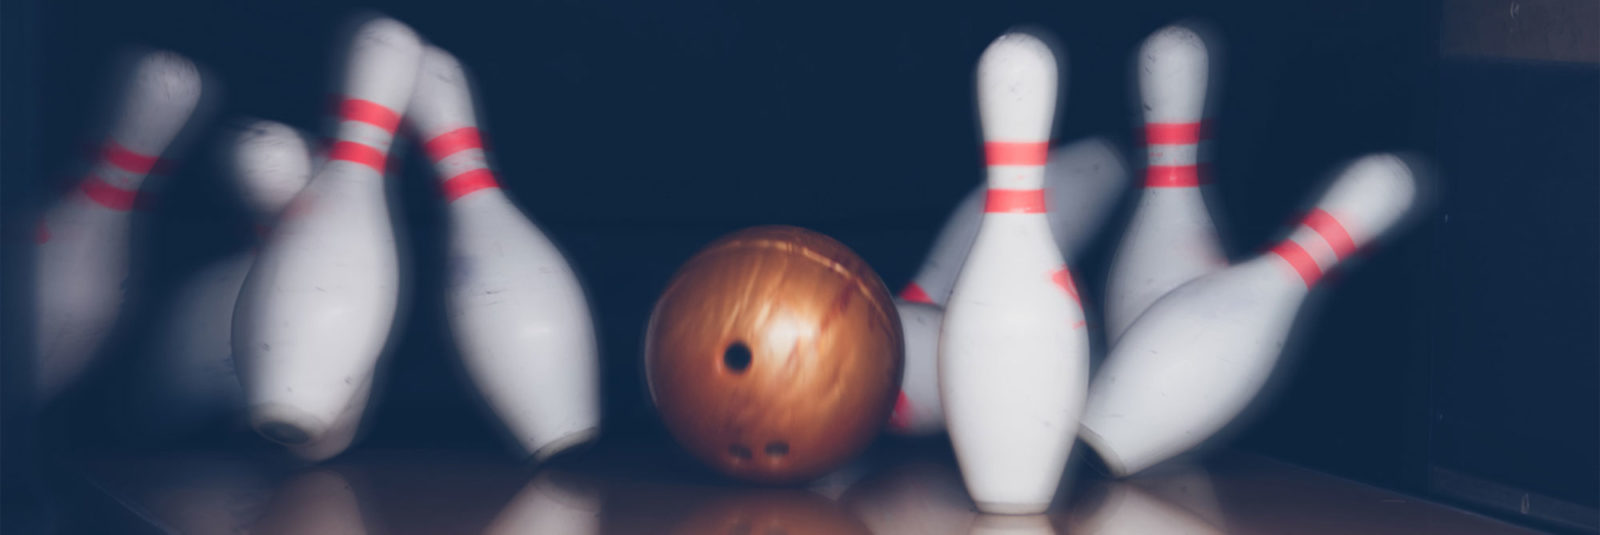 bowling-league-slide